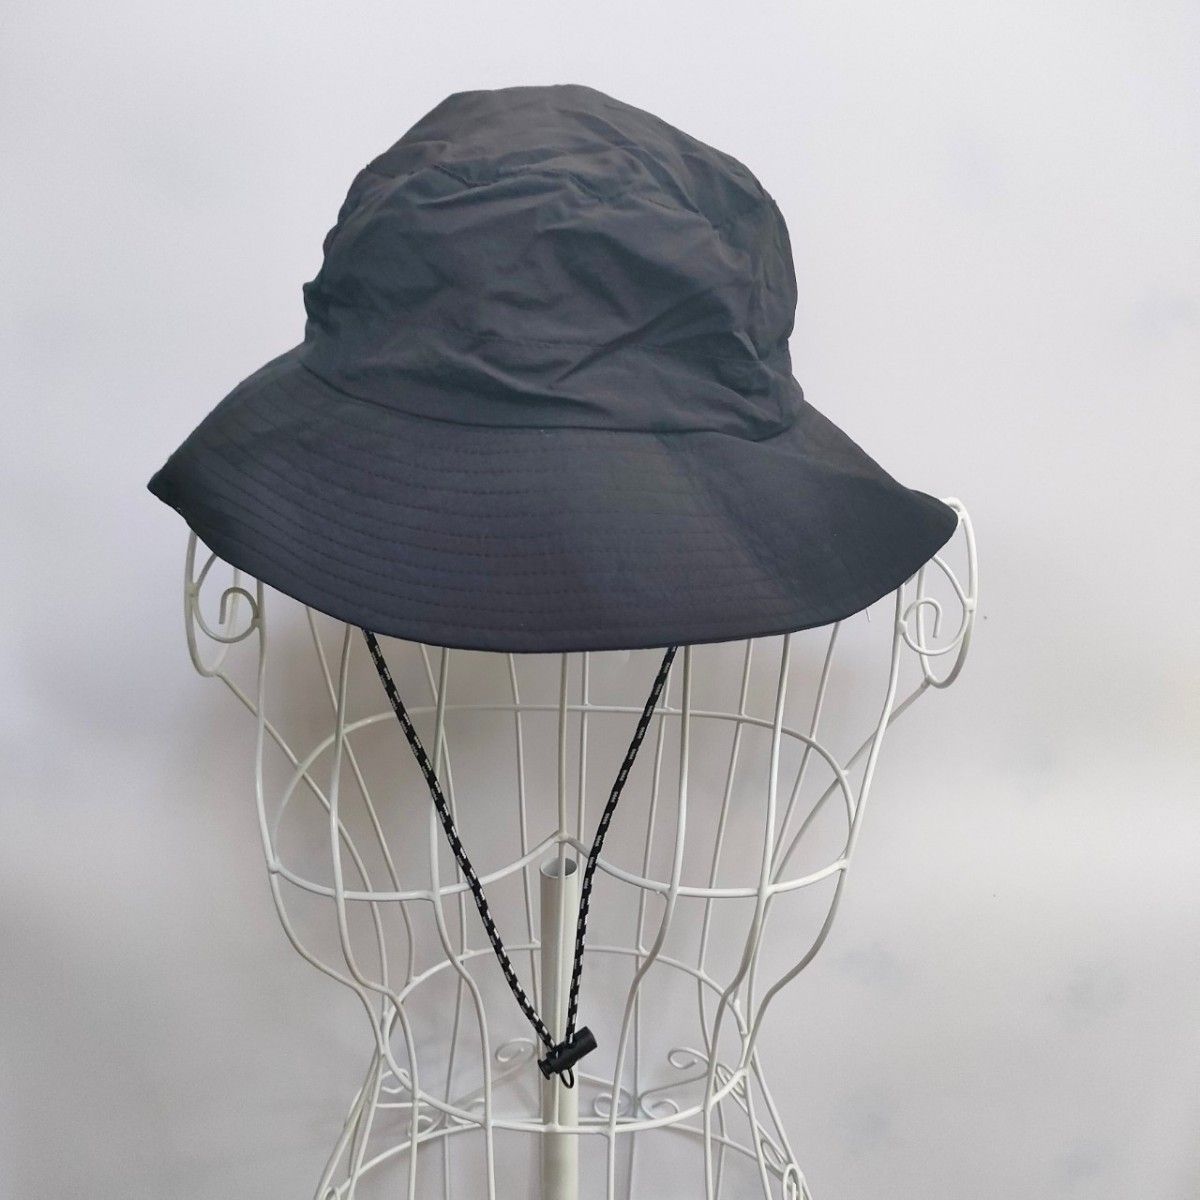 【ブラック/メンズ帽子③】 日除け 帽子 ハットキャンプ メンズ 防水 56cm 男女兼用 UVカット 帽子 日よけ アウトドア